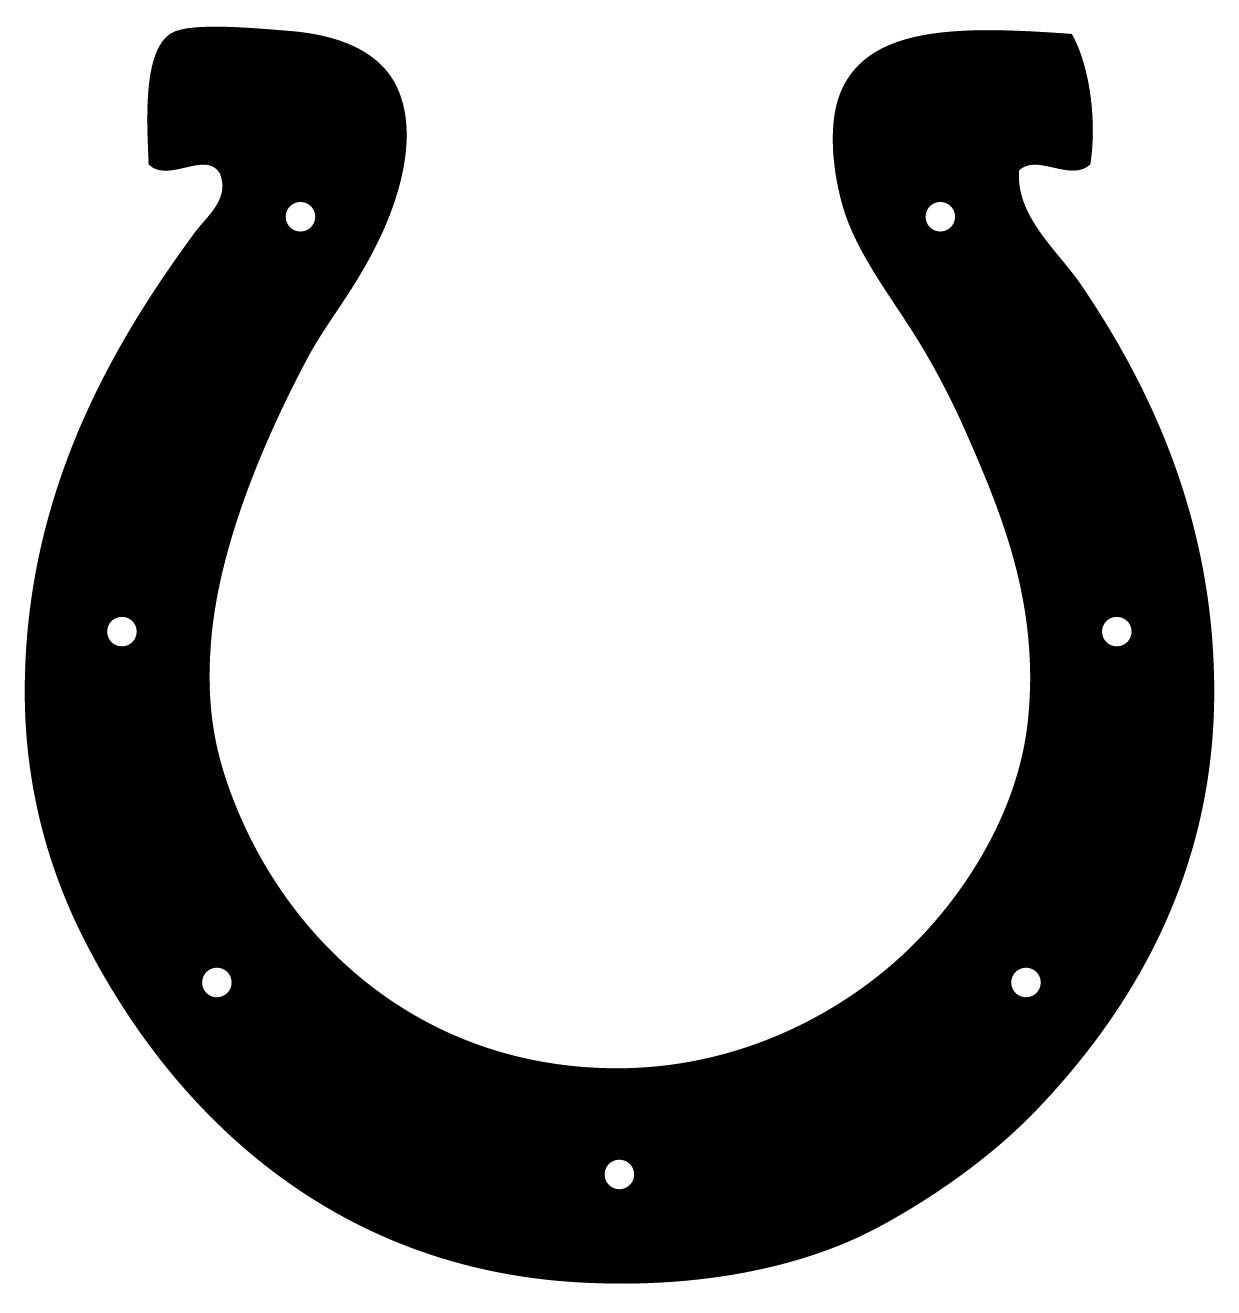 Indianapolis Colts Football Logo